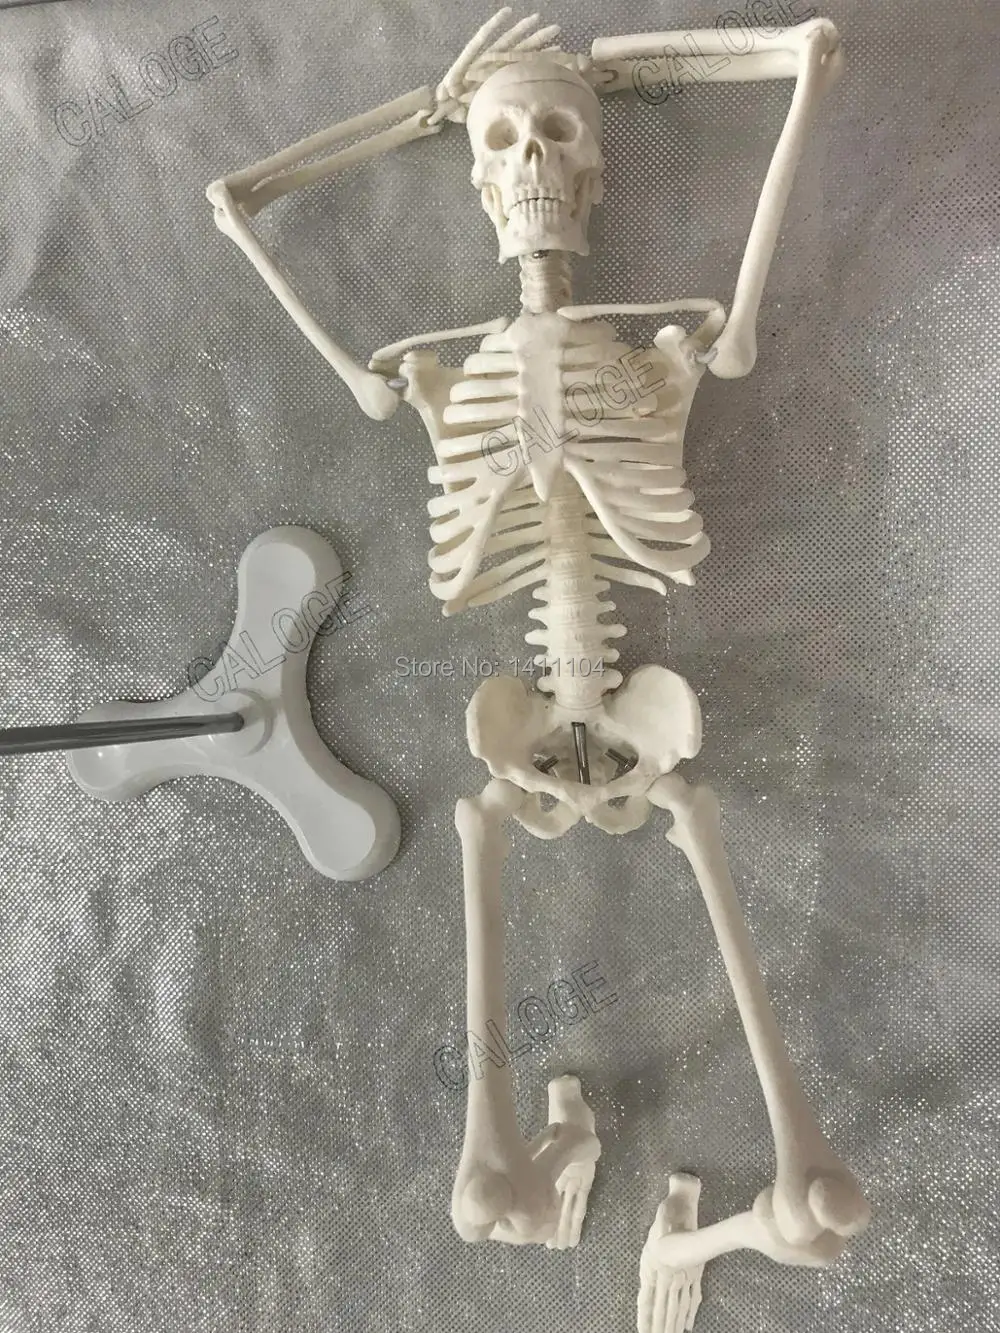 Специальные предложения на продажу и 45 см маленькая модель кости, модель скелета человека, модель скелета, художественный эскиз, подарок, кукла. Человеческая модель